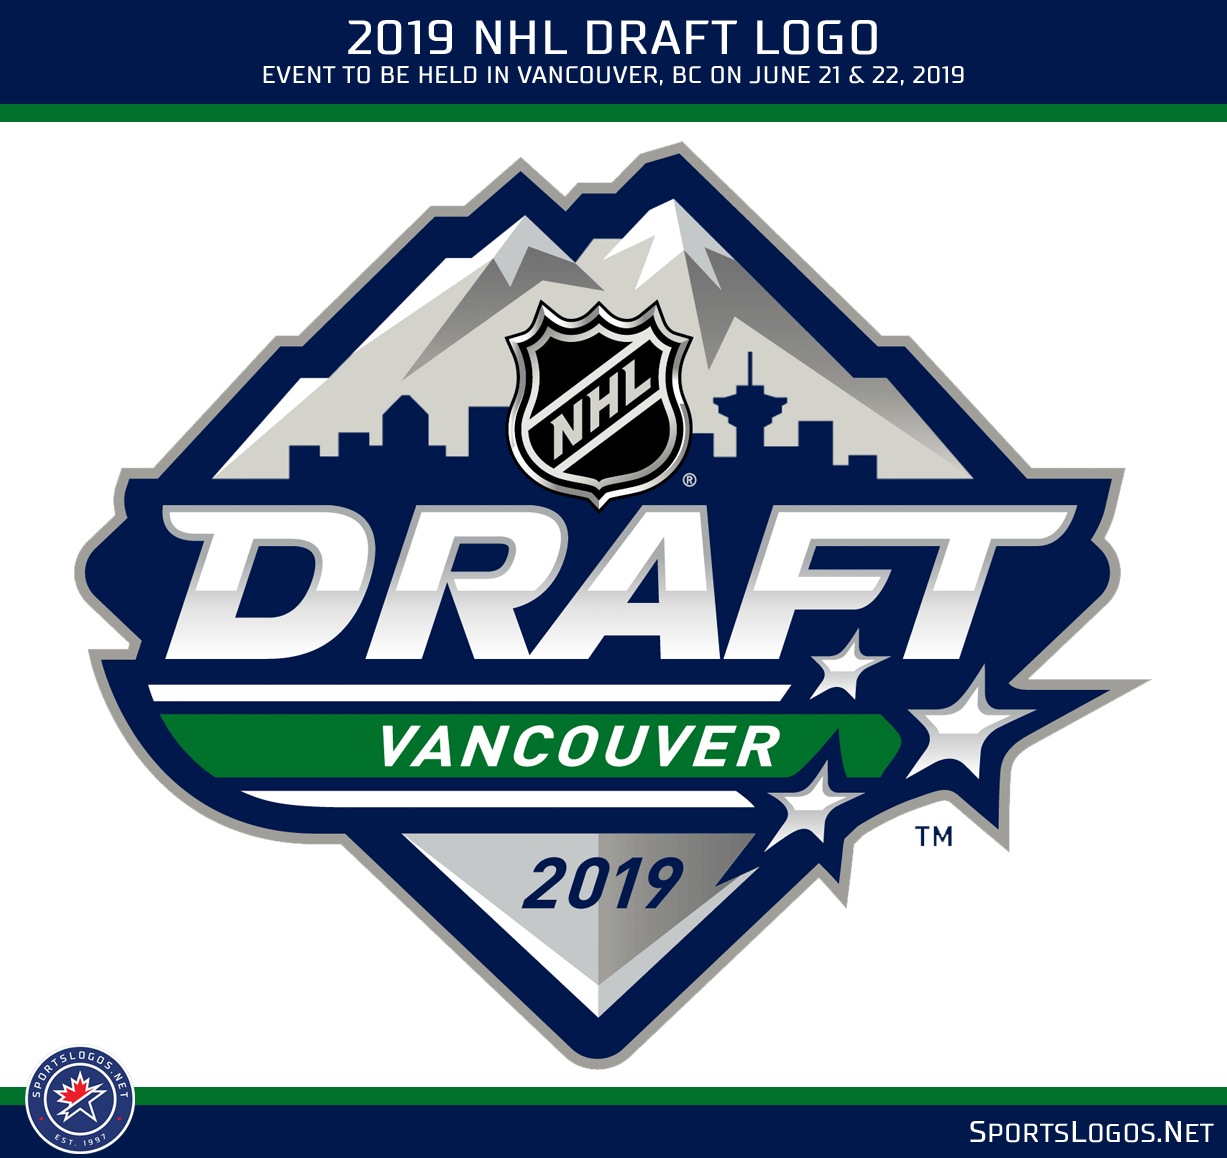 Draft Logo - Logo Released for 2019 NHL Draft in Vancouver | Chris Creamer's ...